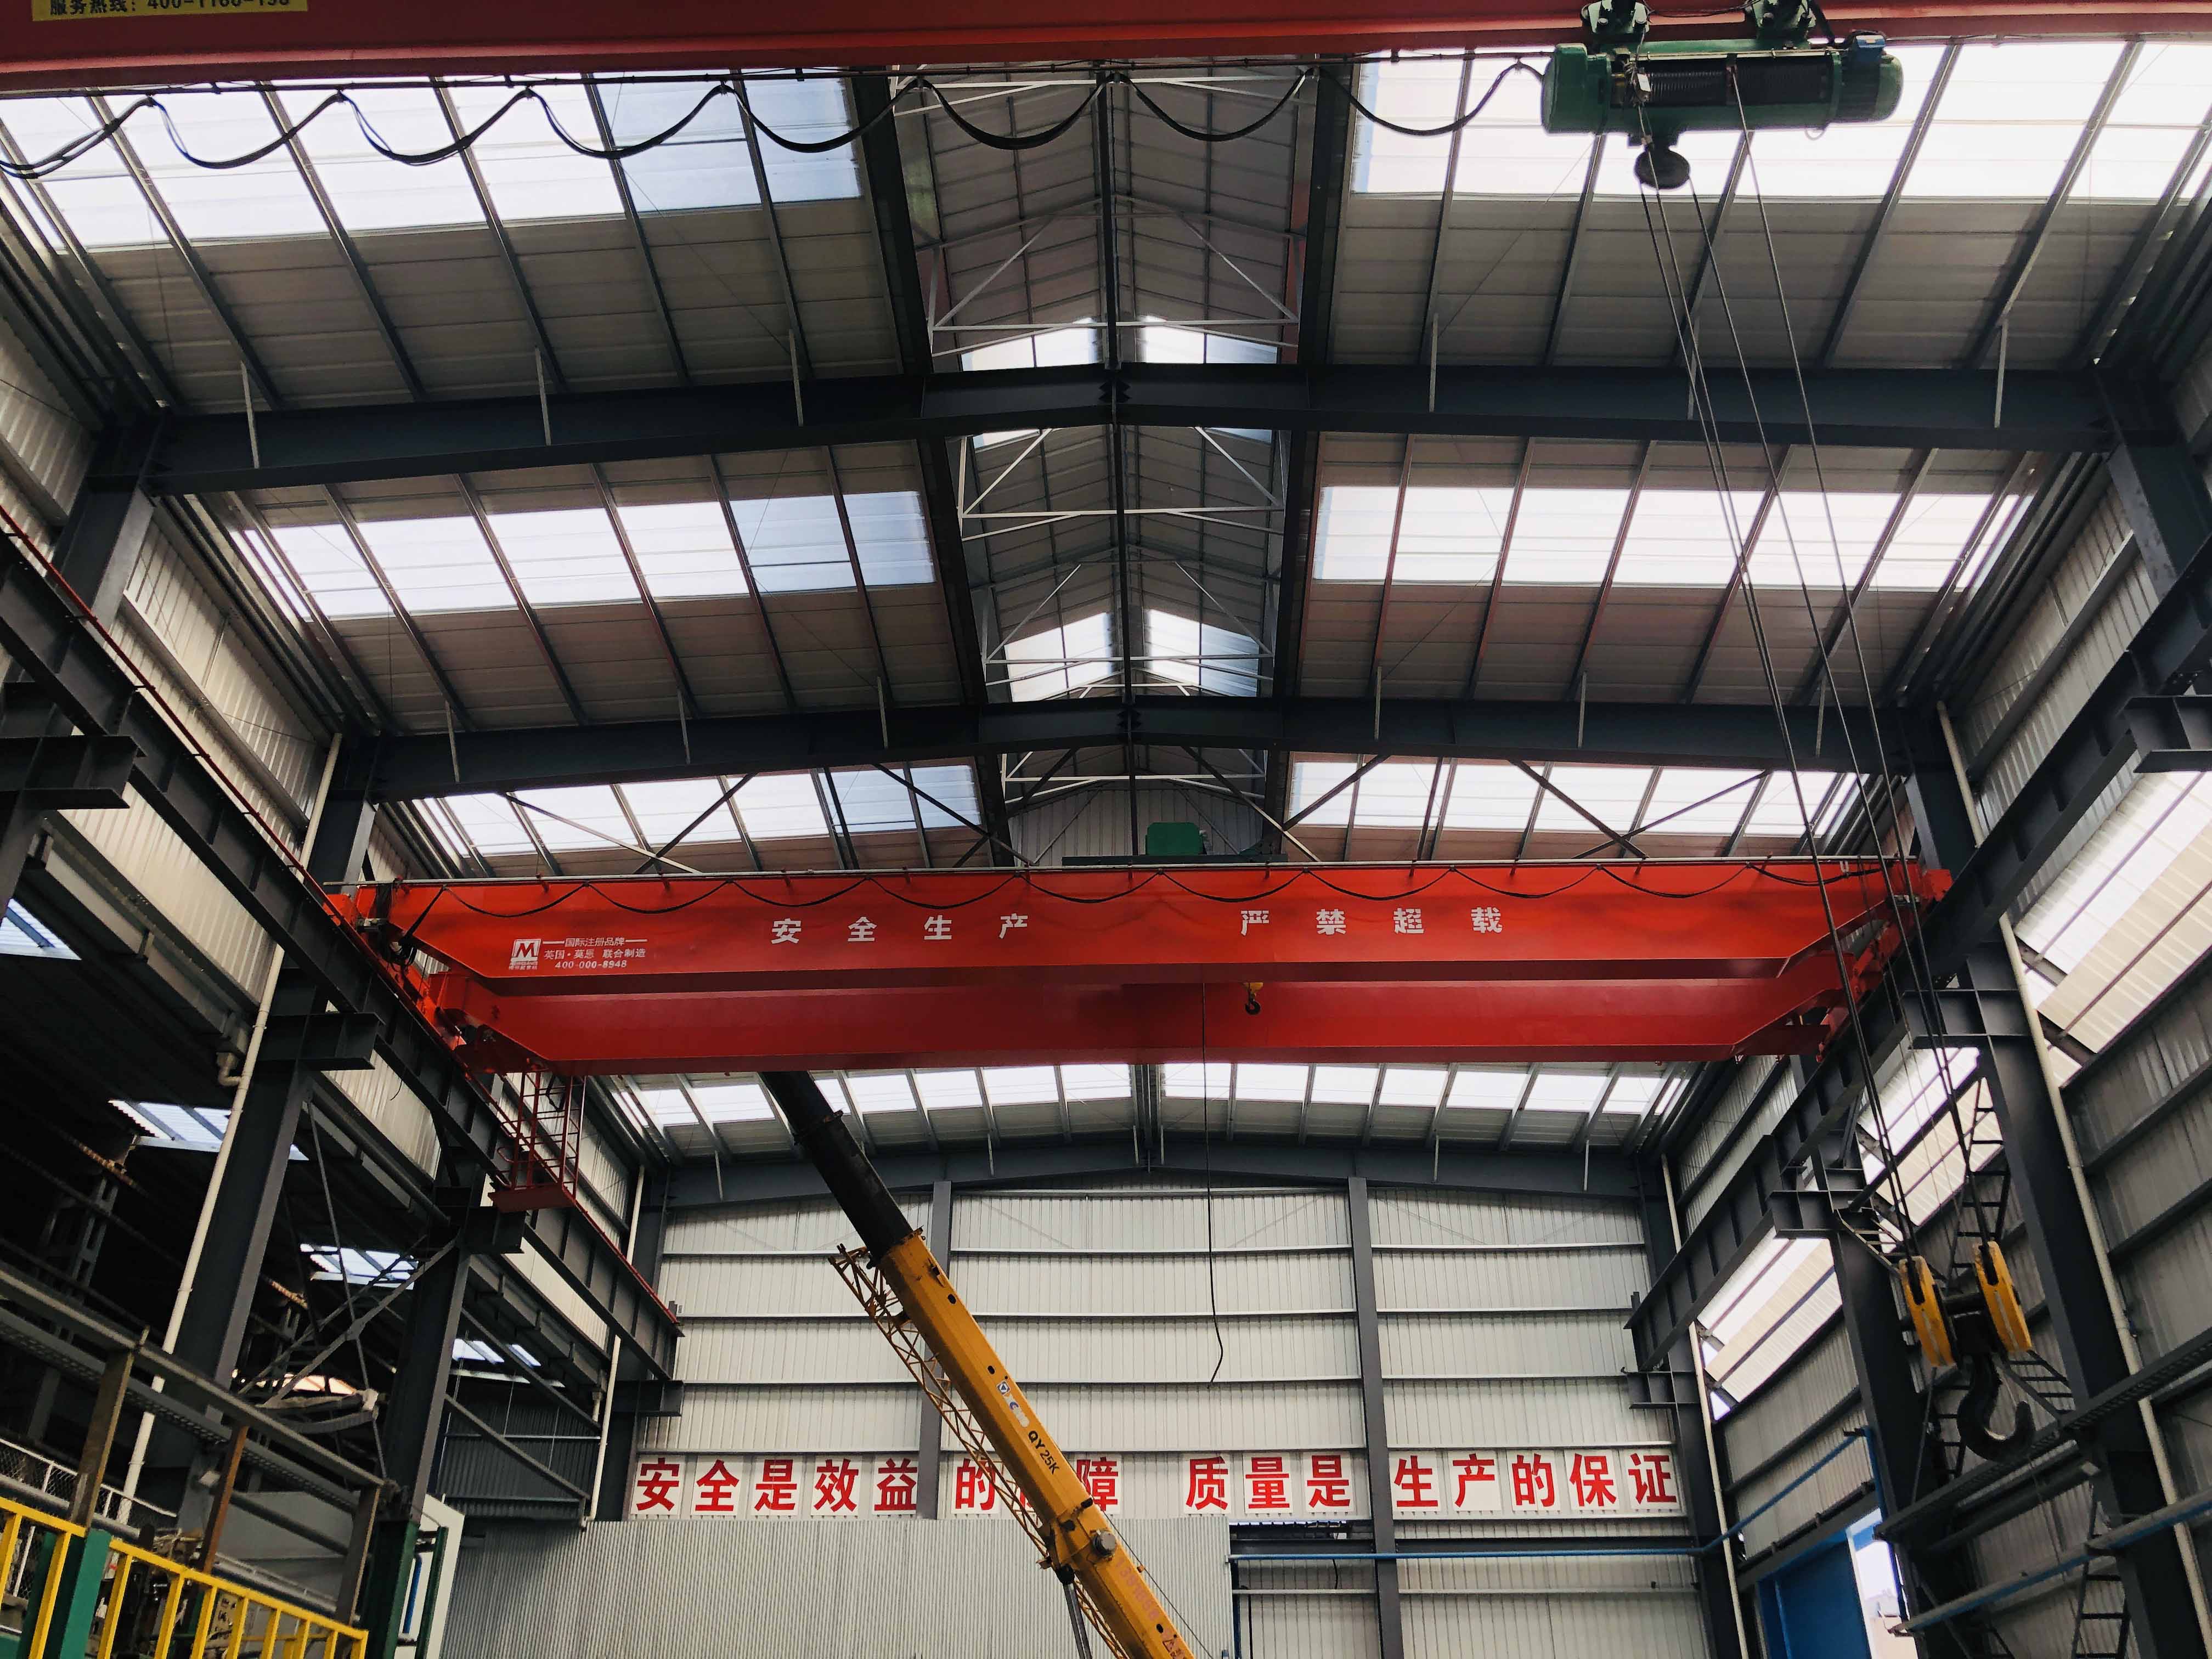 上海寶山太平貨柜有限公司LH型32/5t葫蘆雙梁橋式起重機施工現場